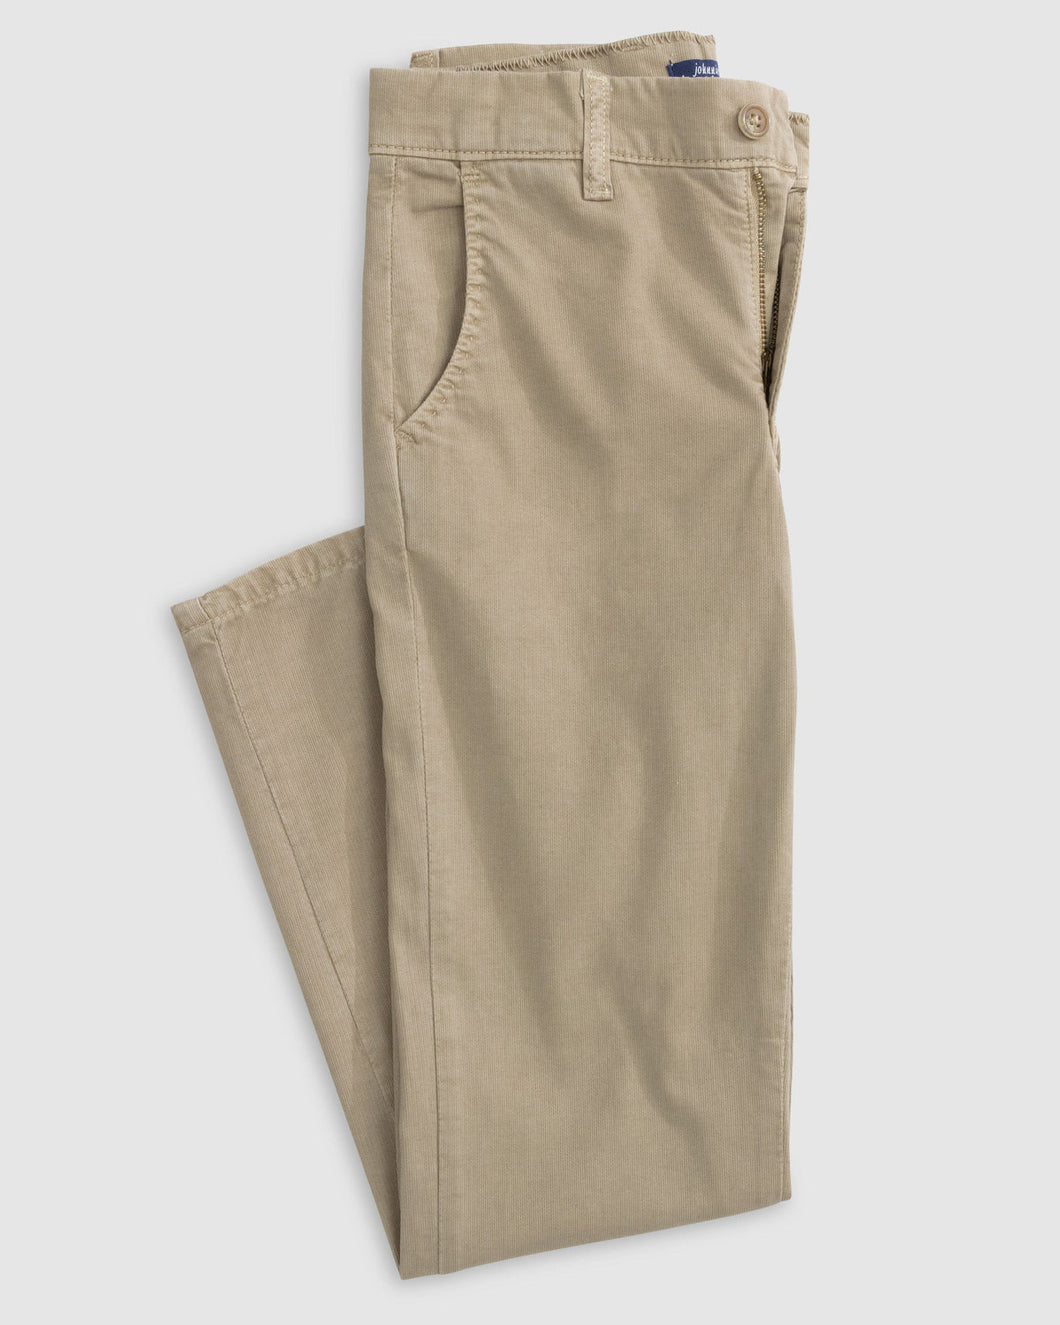 Khaki Cairo Jr. Cotton Stretch Pants